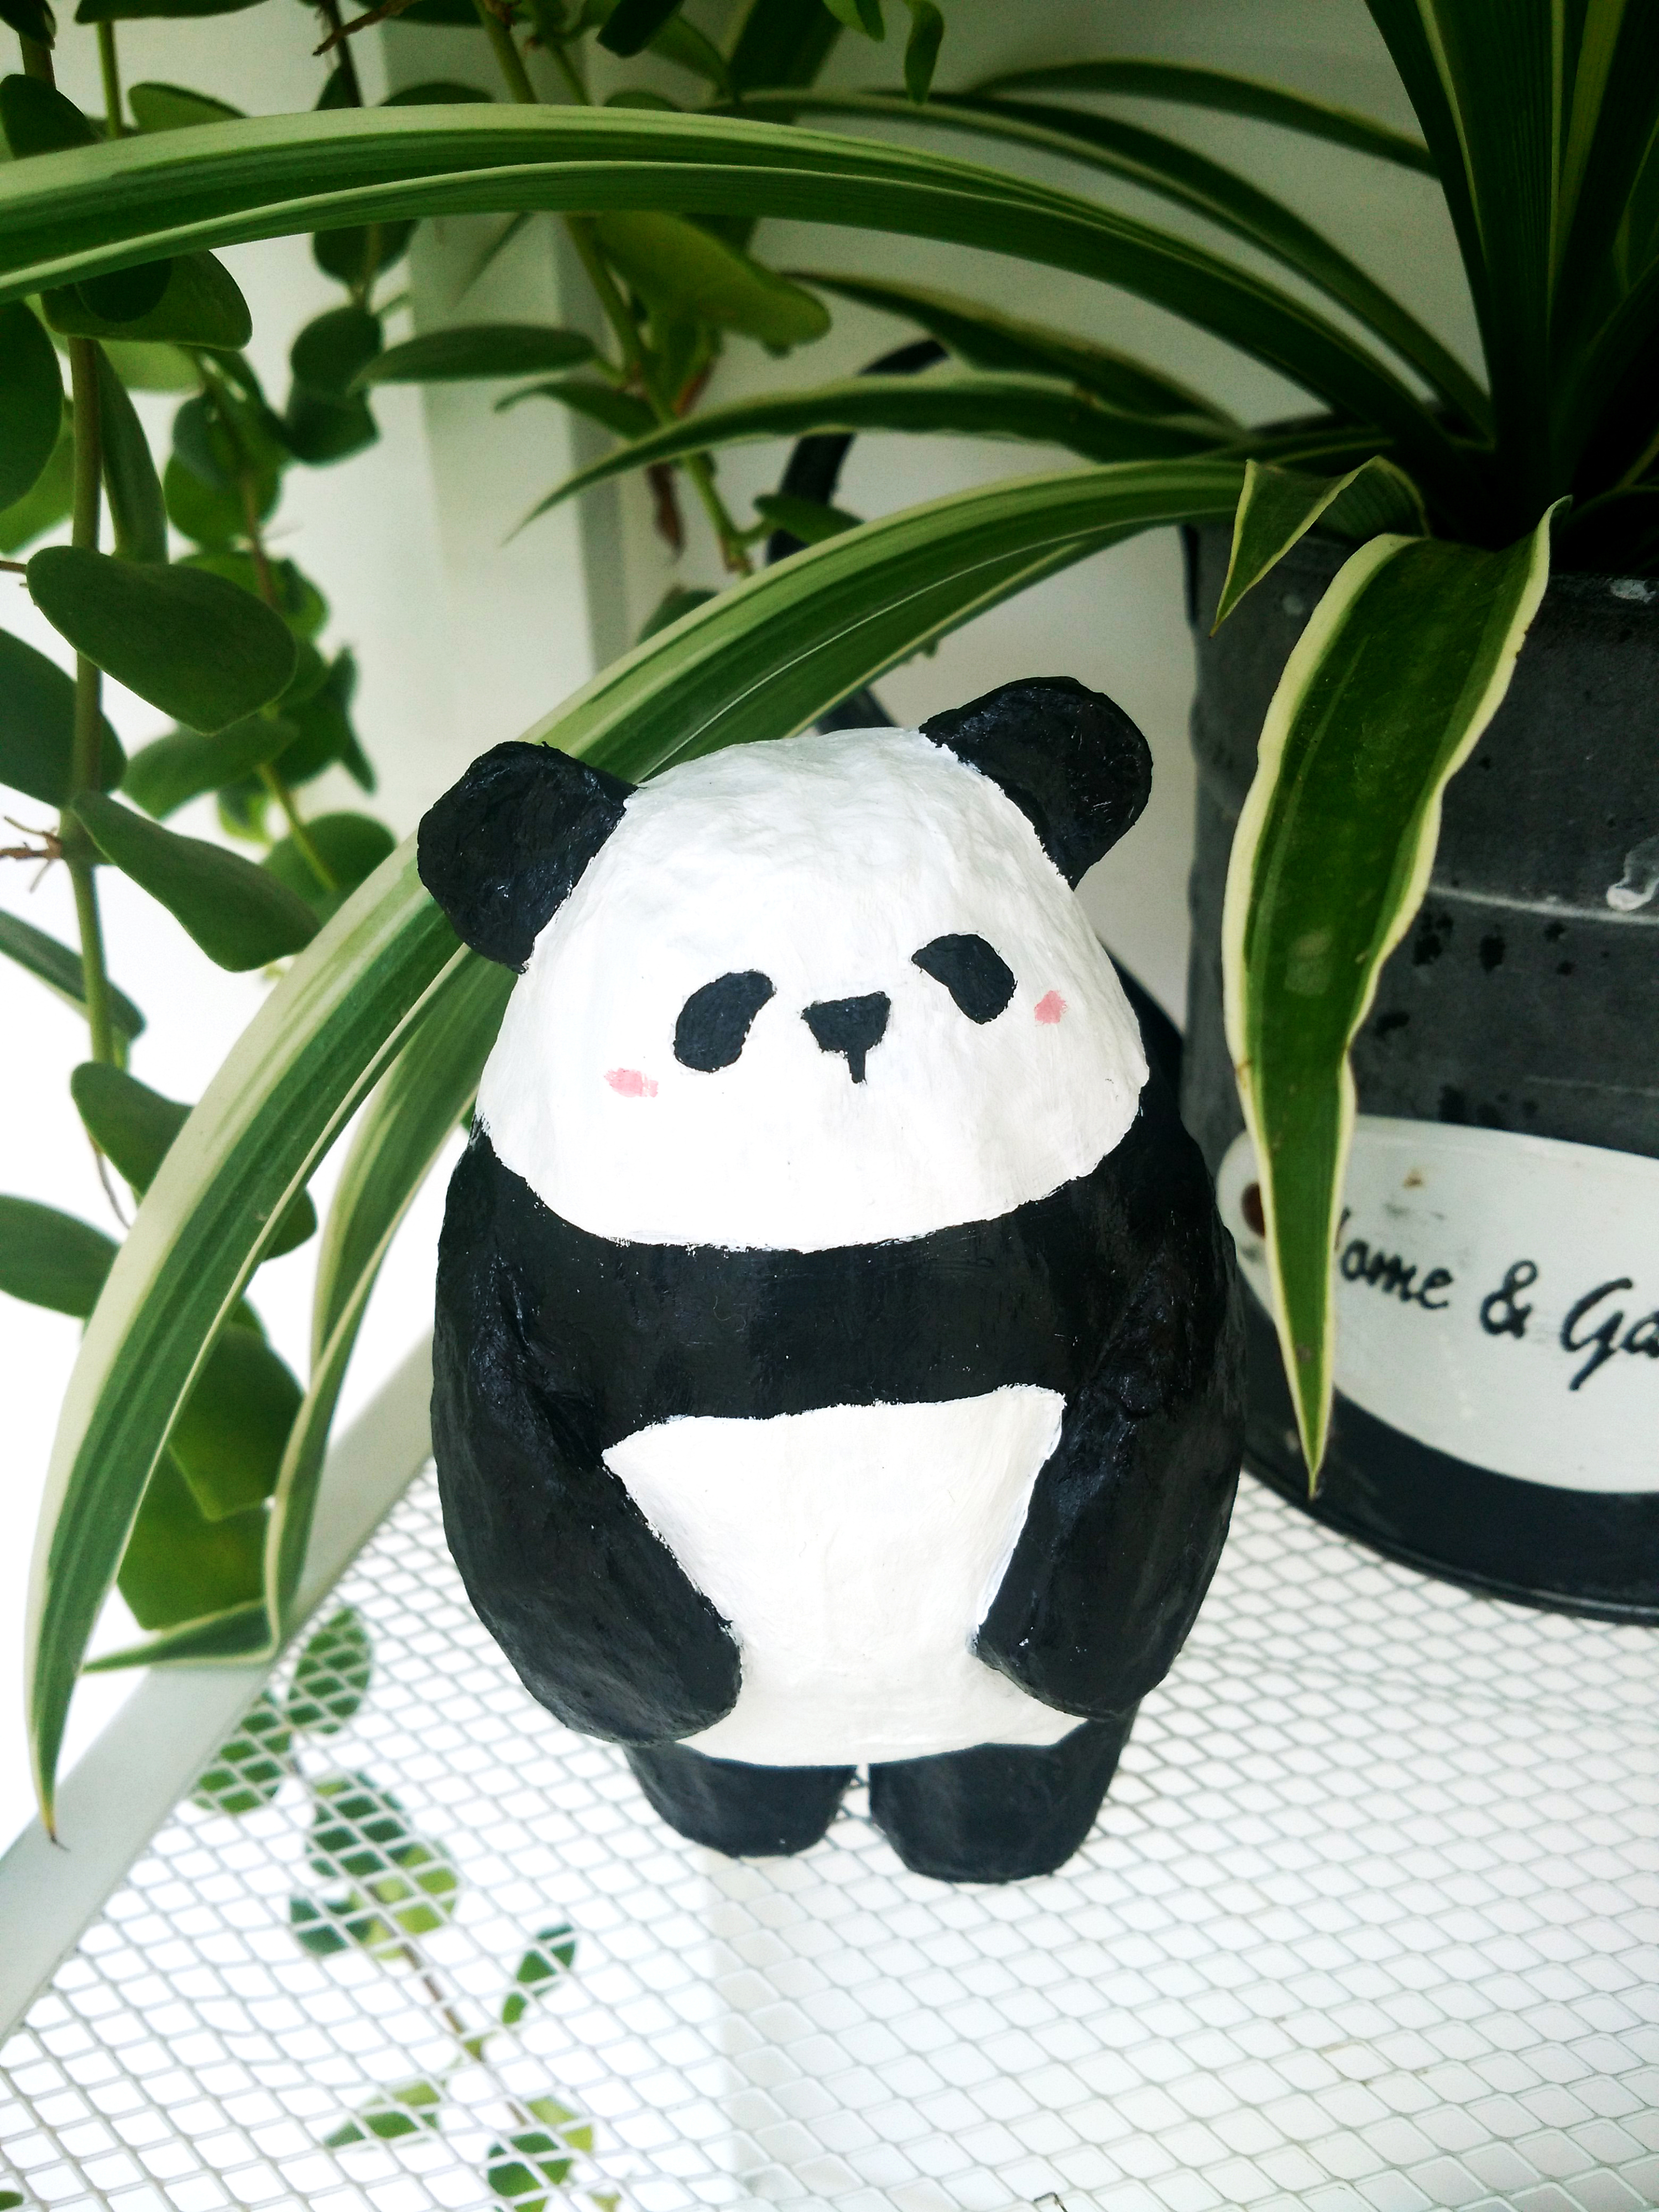 【纸塑】报纸的重生轮回(4)panda 熊猫